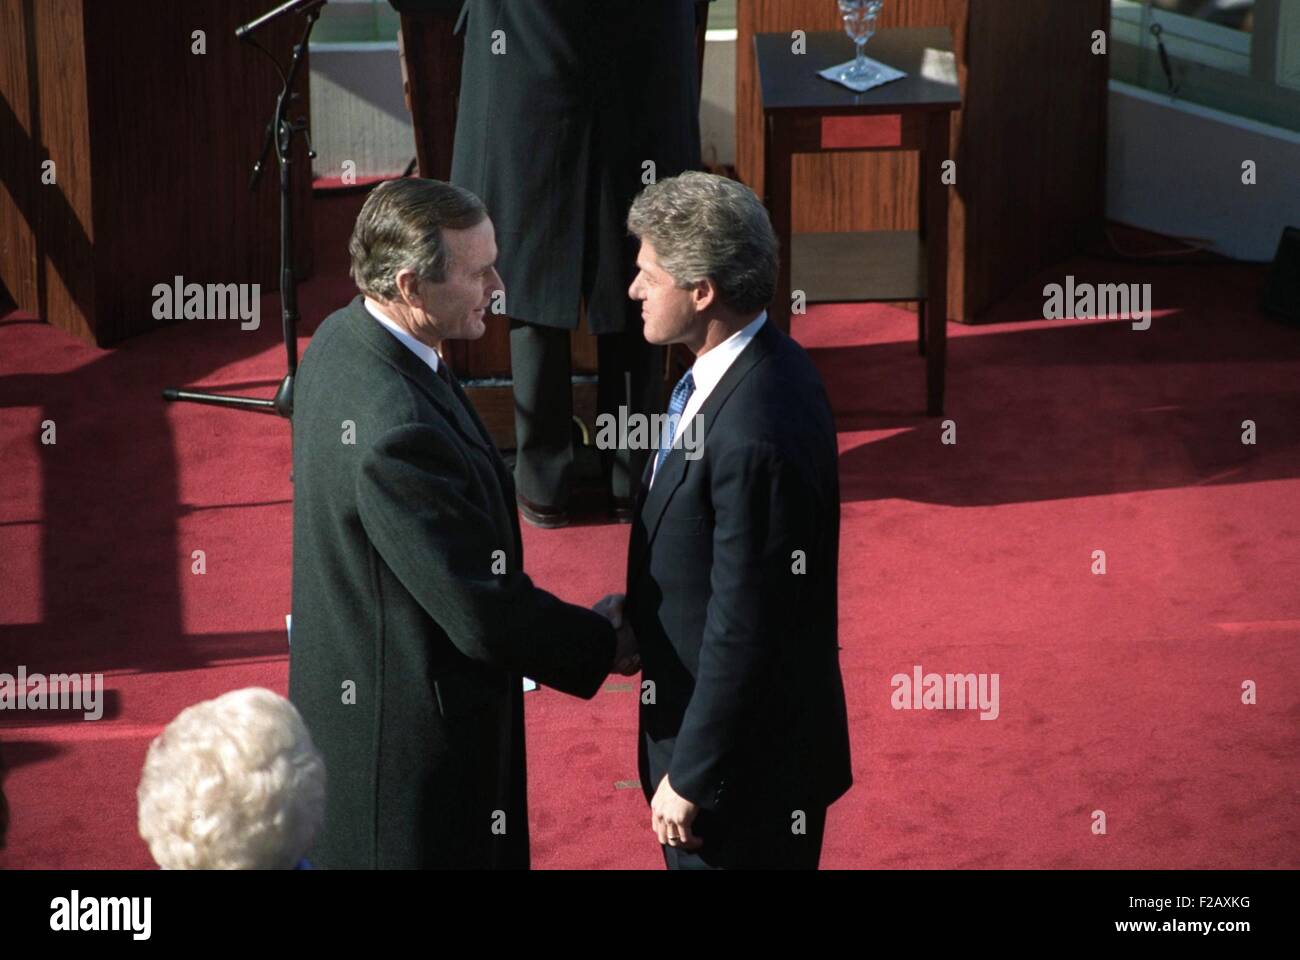 Saliente Presidente George H.W. Bush y el Presidente electo Bill Clinton. El 20 de enero, 1993. Se dan la mano justo después de la ceremonia inaugural en el Capitolio de EE.UU. (BSLOC 2015 2 185) Foto de stock